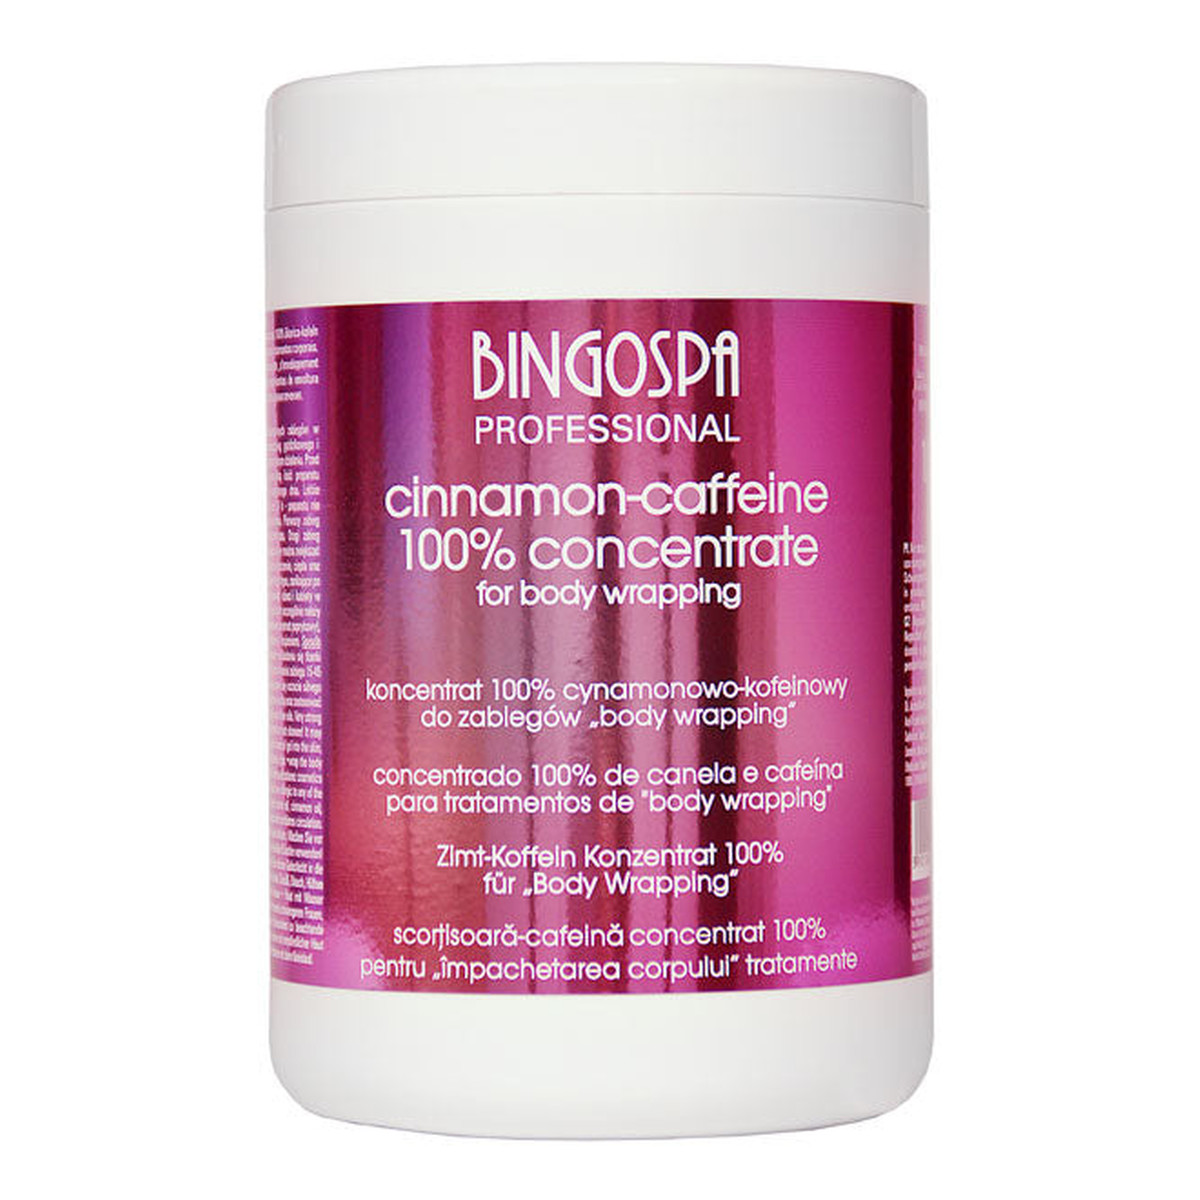 BingoSpa Professional Koncentrat 100% cynamonowo-kofeinowy do zabiegów body wrapping 1000ml